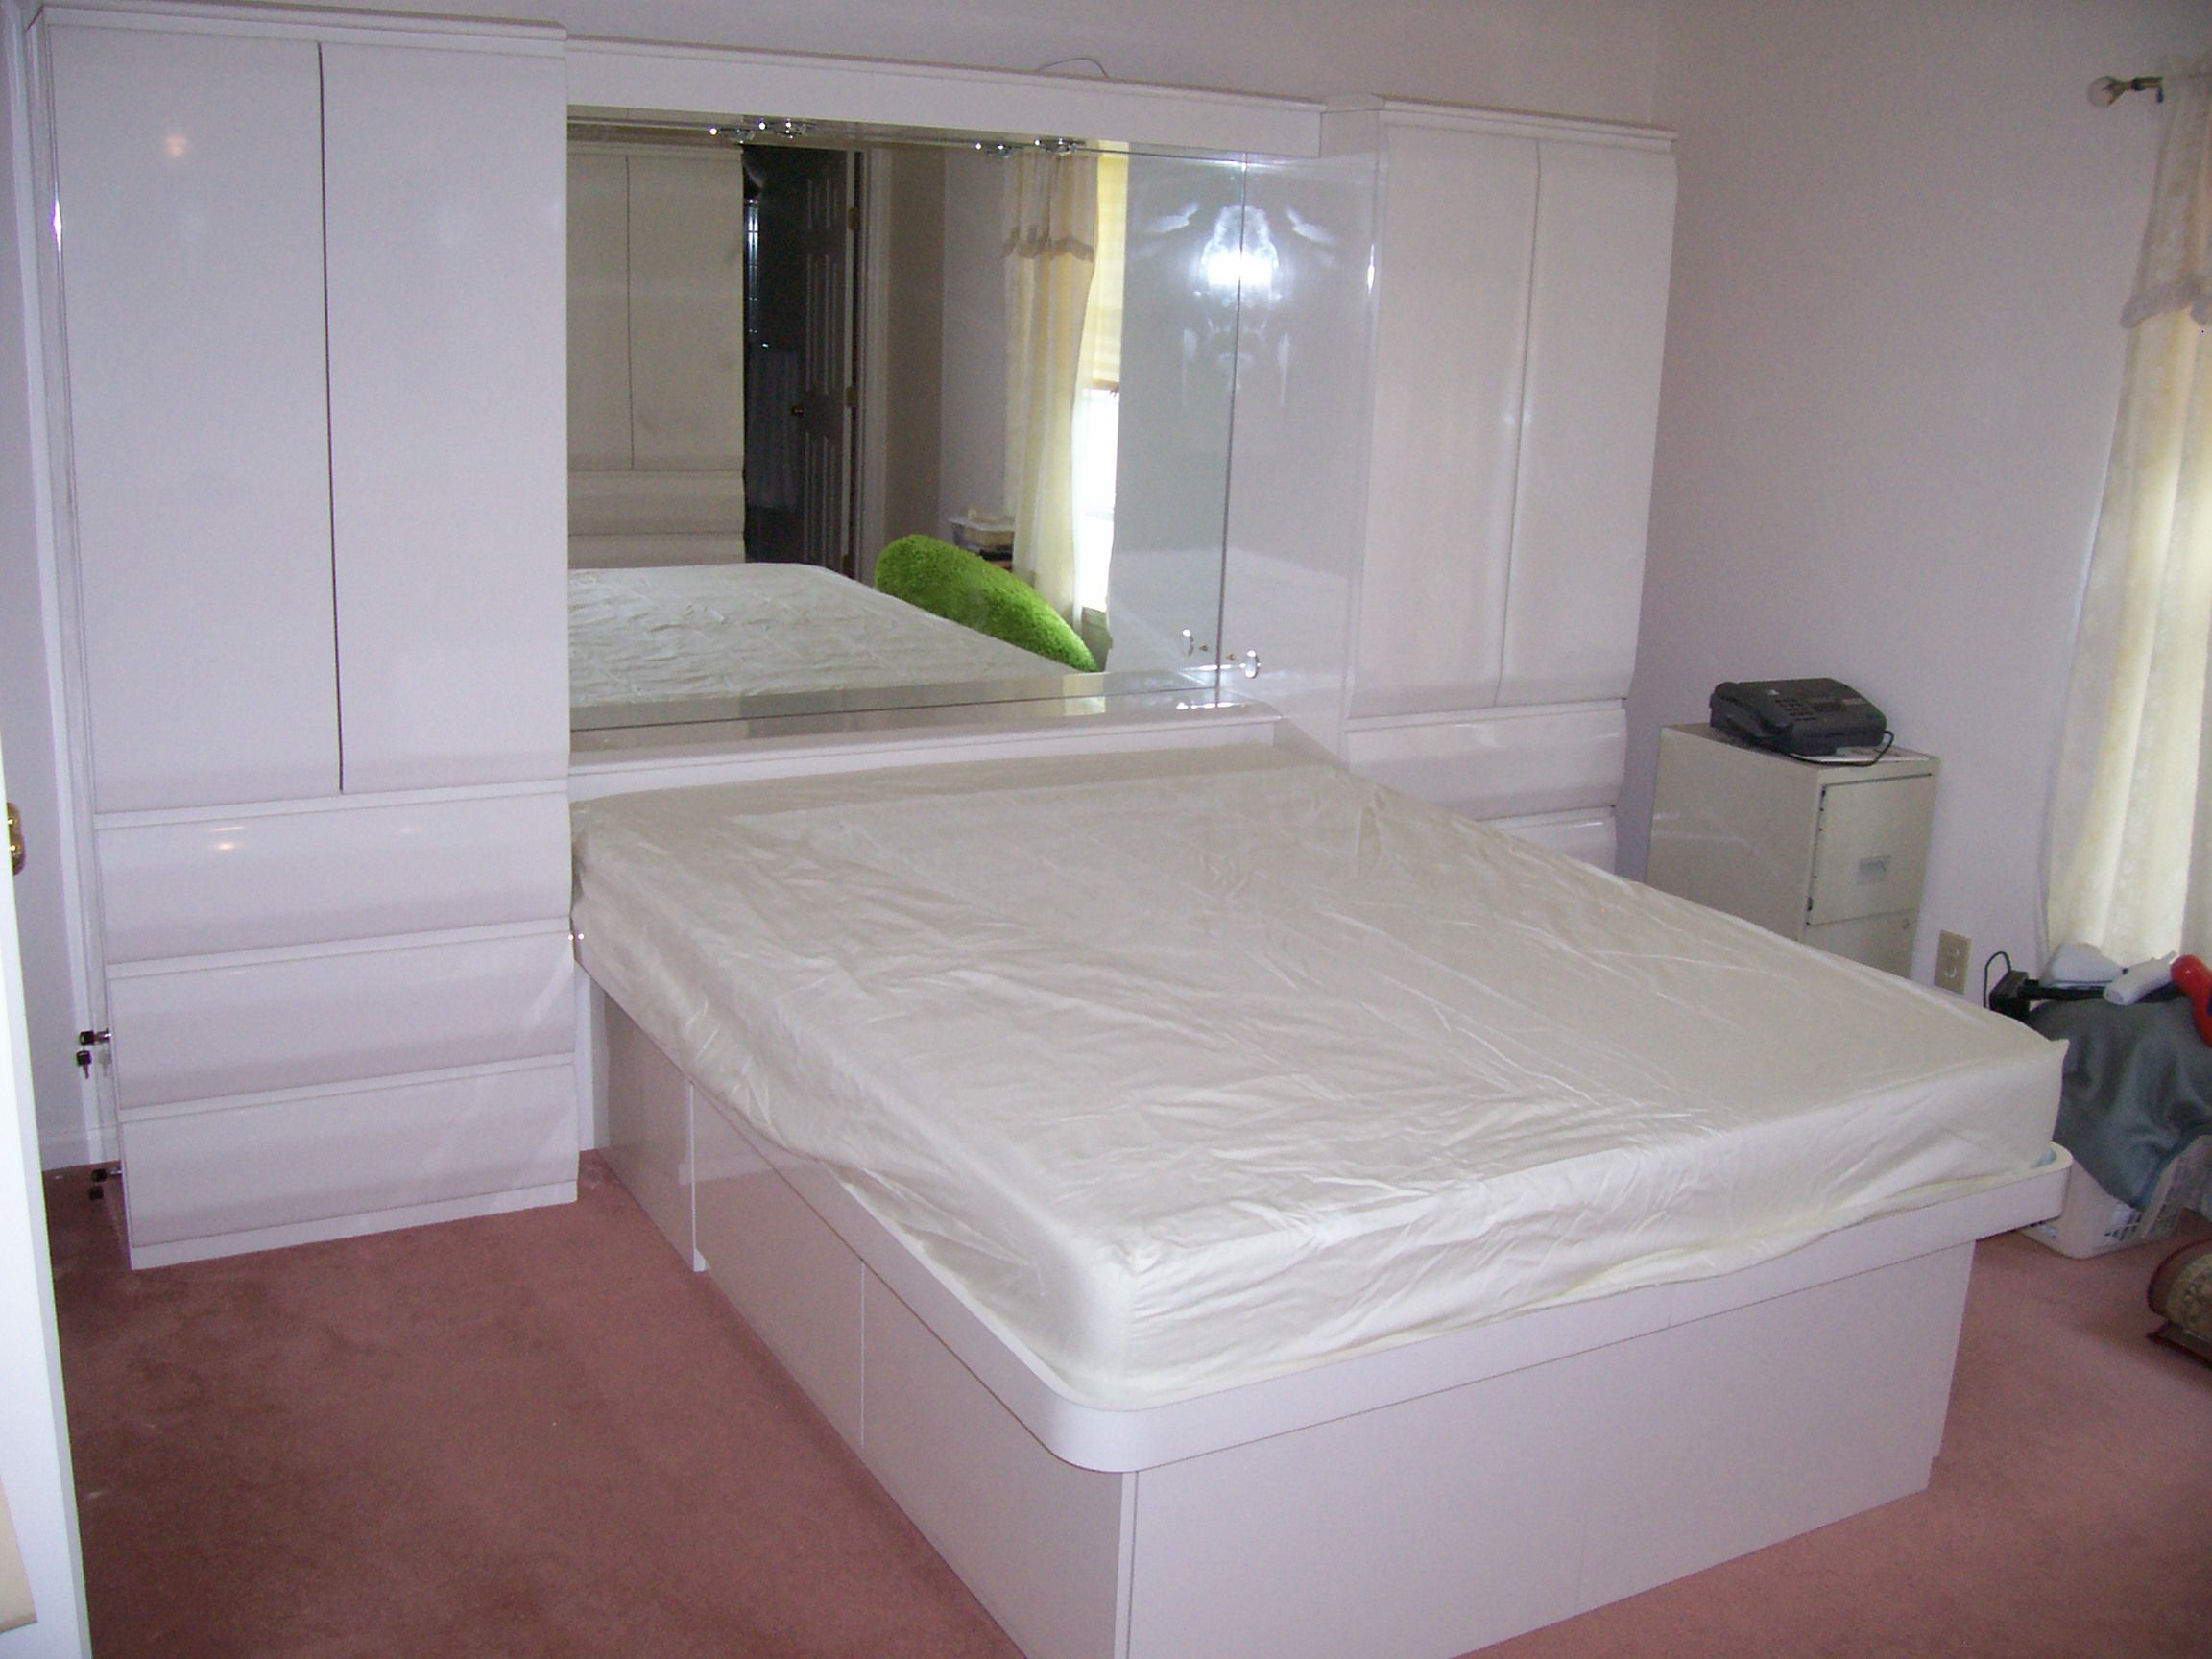 Formica Bedroom Furniture Plathform Beds Home Design Bedroom intended for size 2304 X 1728